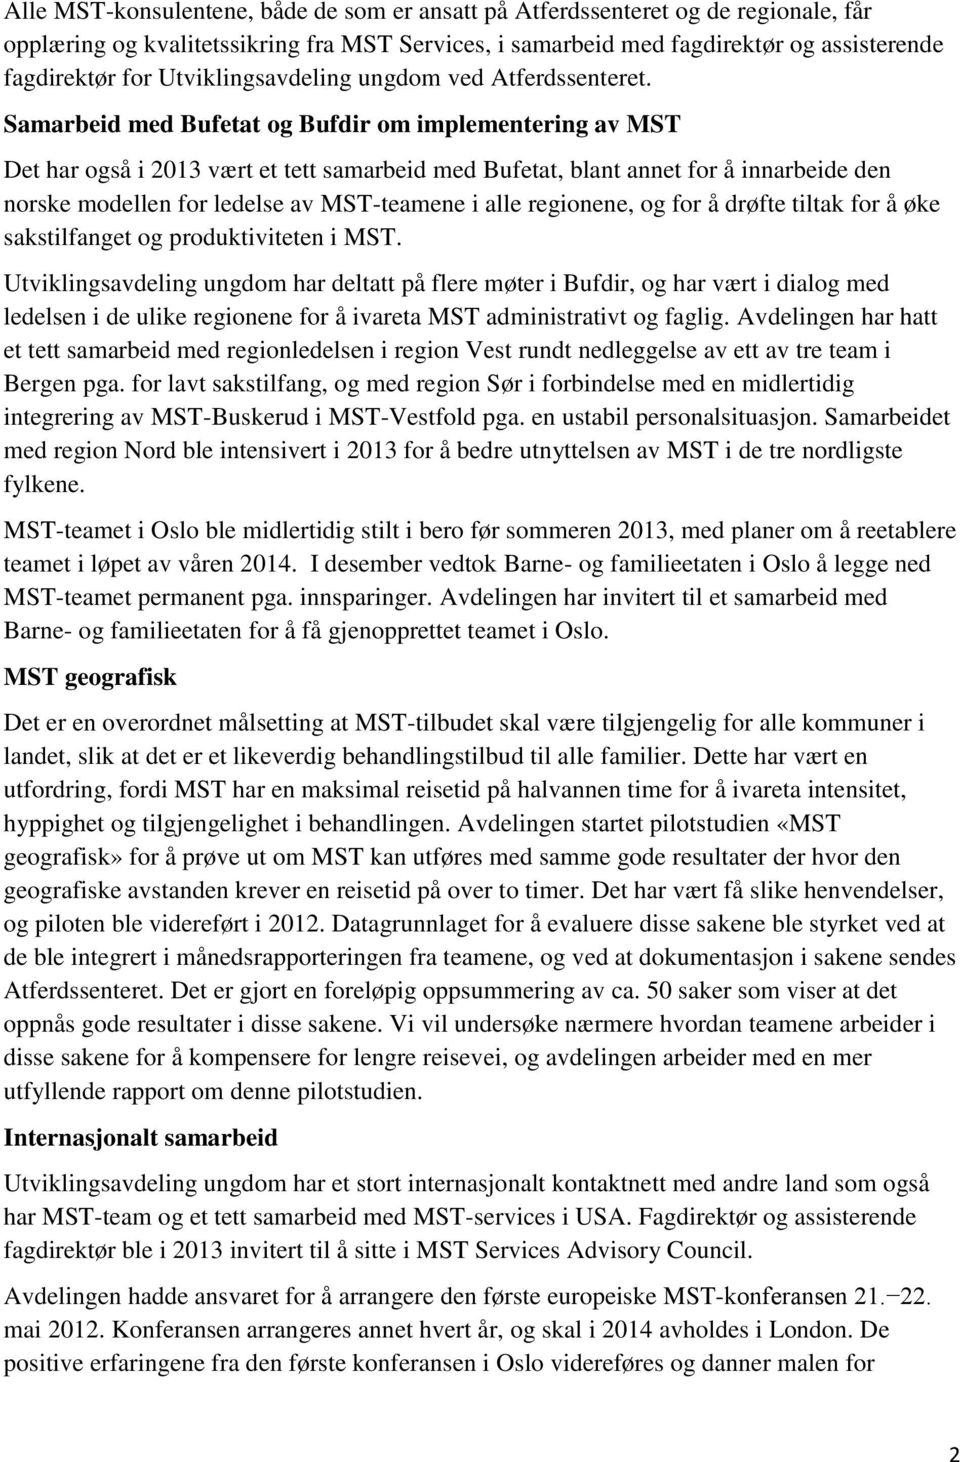 Samarbeid med Bufetat og Bufdir om implementering av MST Det har også i 2013 vært et tett samarbeid med Bufetat, blant annet for å innarbeide den norske modellen for ledelse av MST-teamene i alle